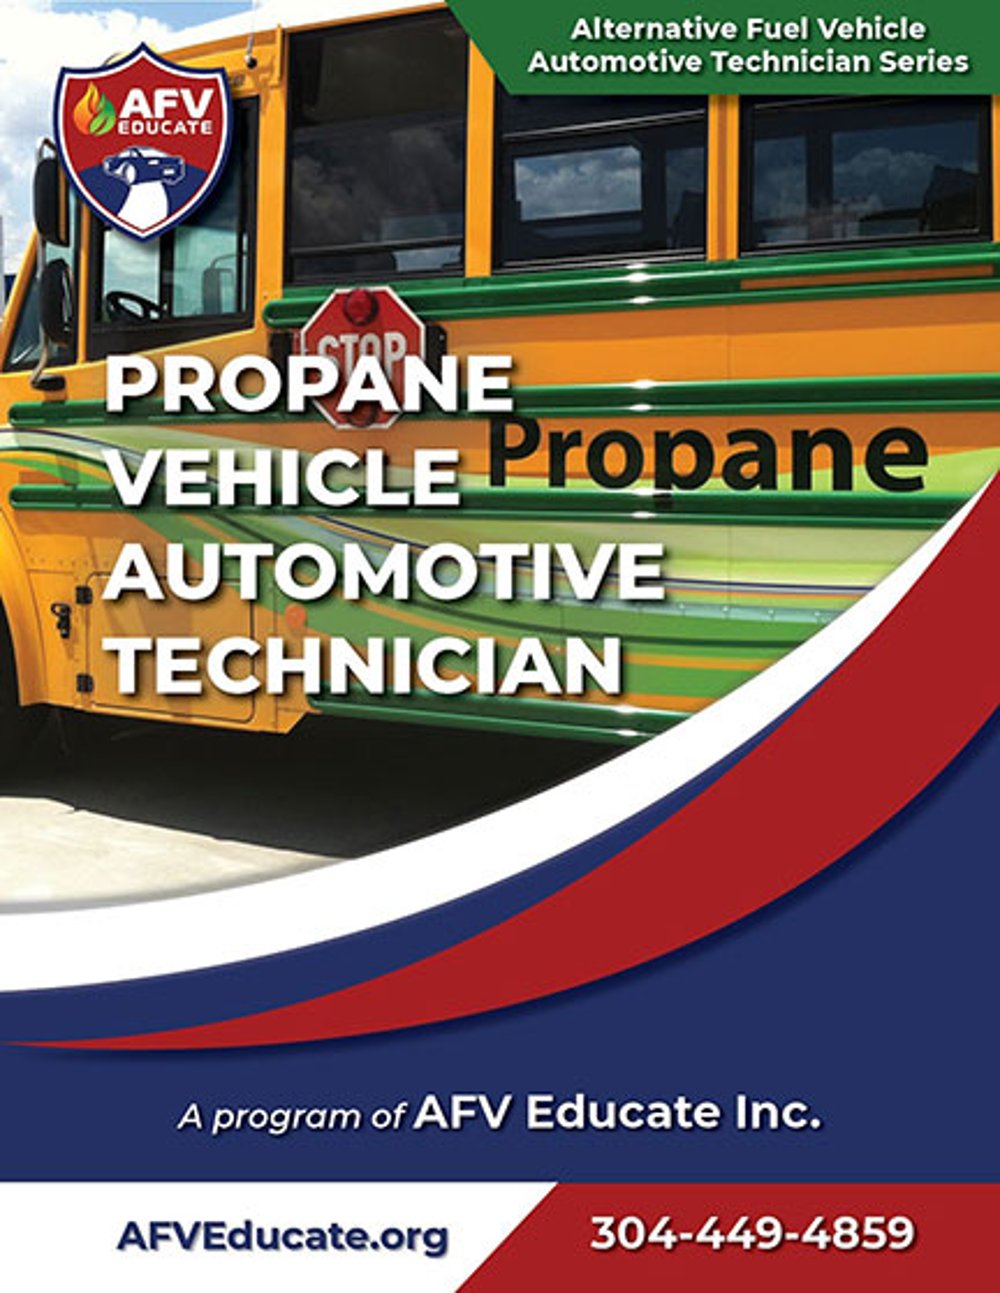 AFV Educate Propane Vehicle Automotive Technician Manual